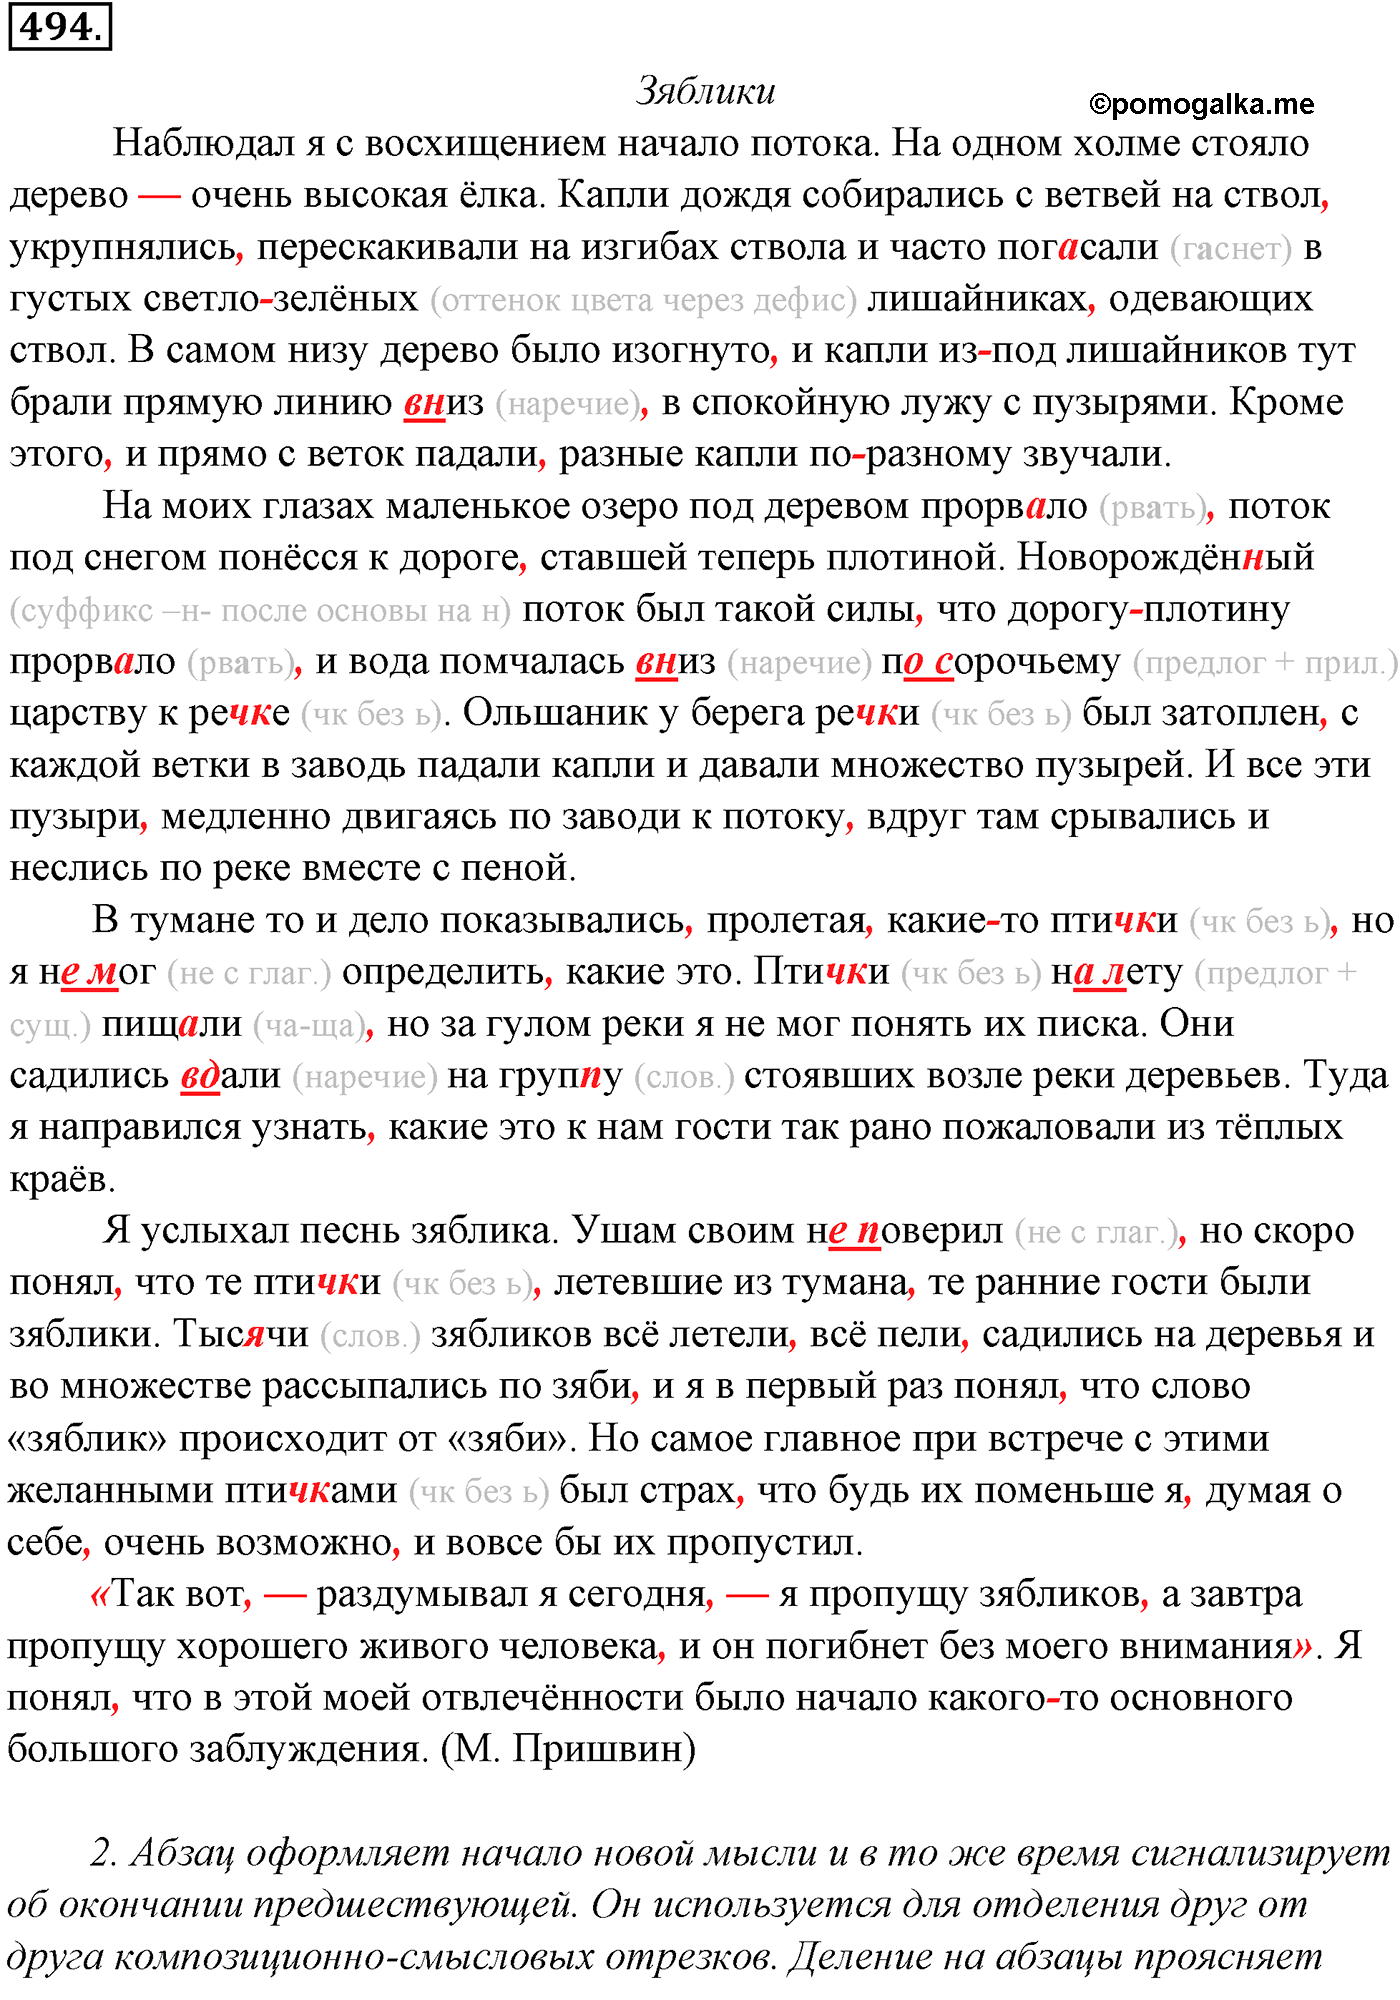 упражнение №494 русский язык 10-11 класс Гольцова